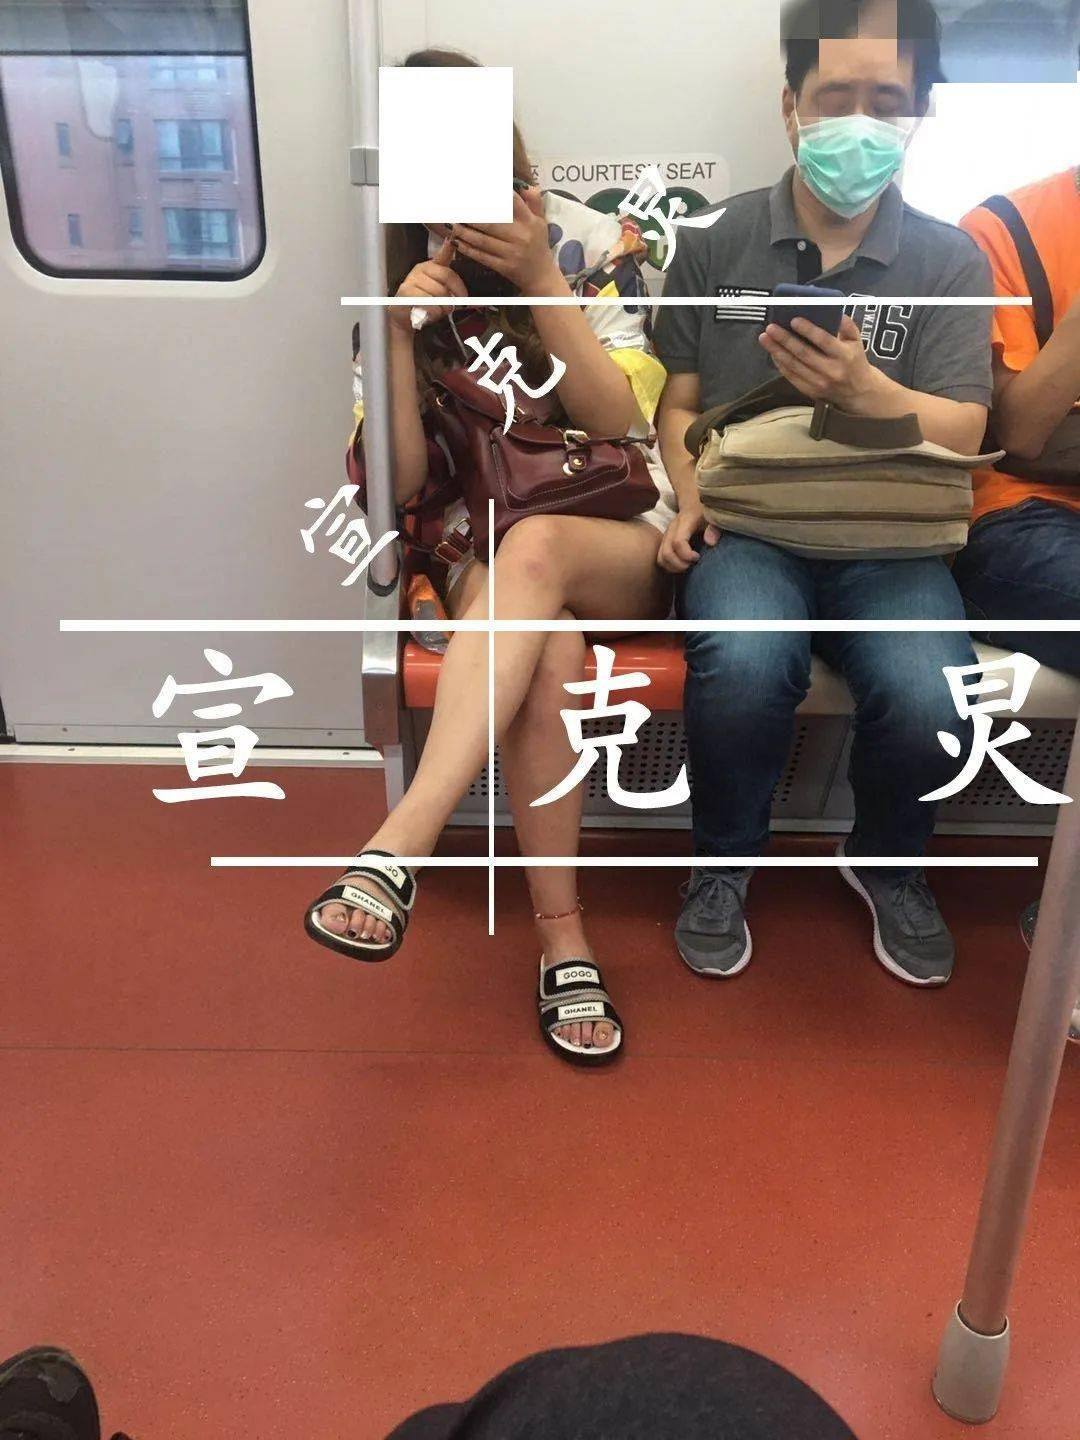 上海地铁上也出现了"咸猪手"